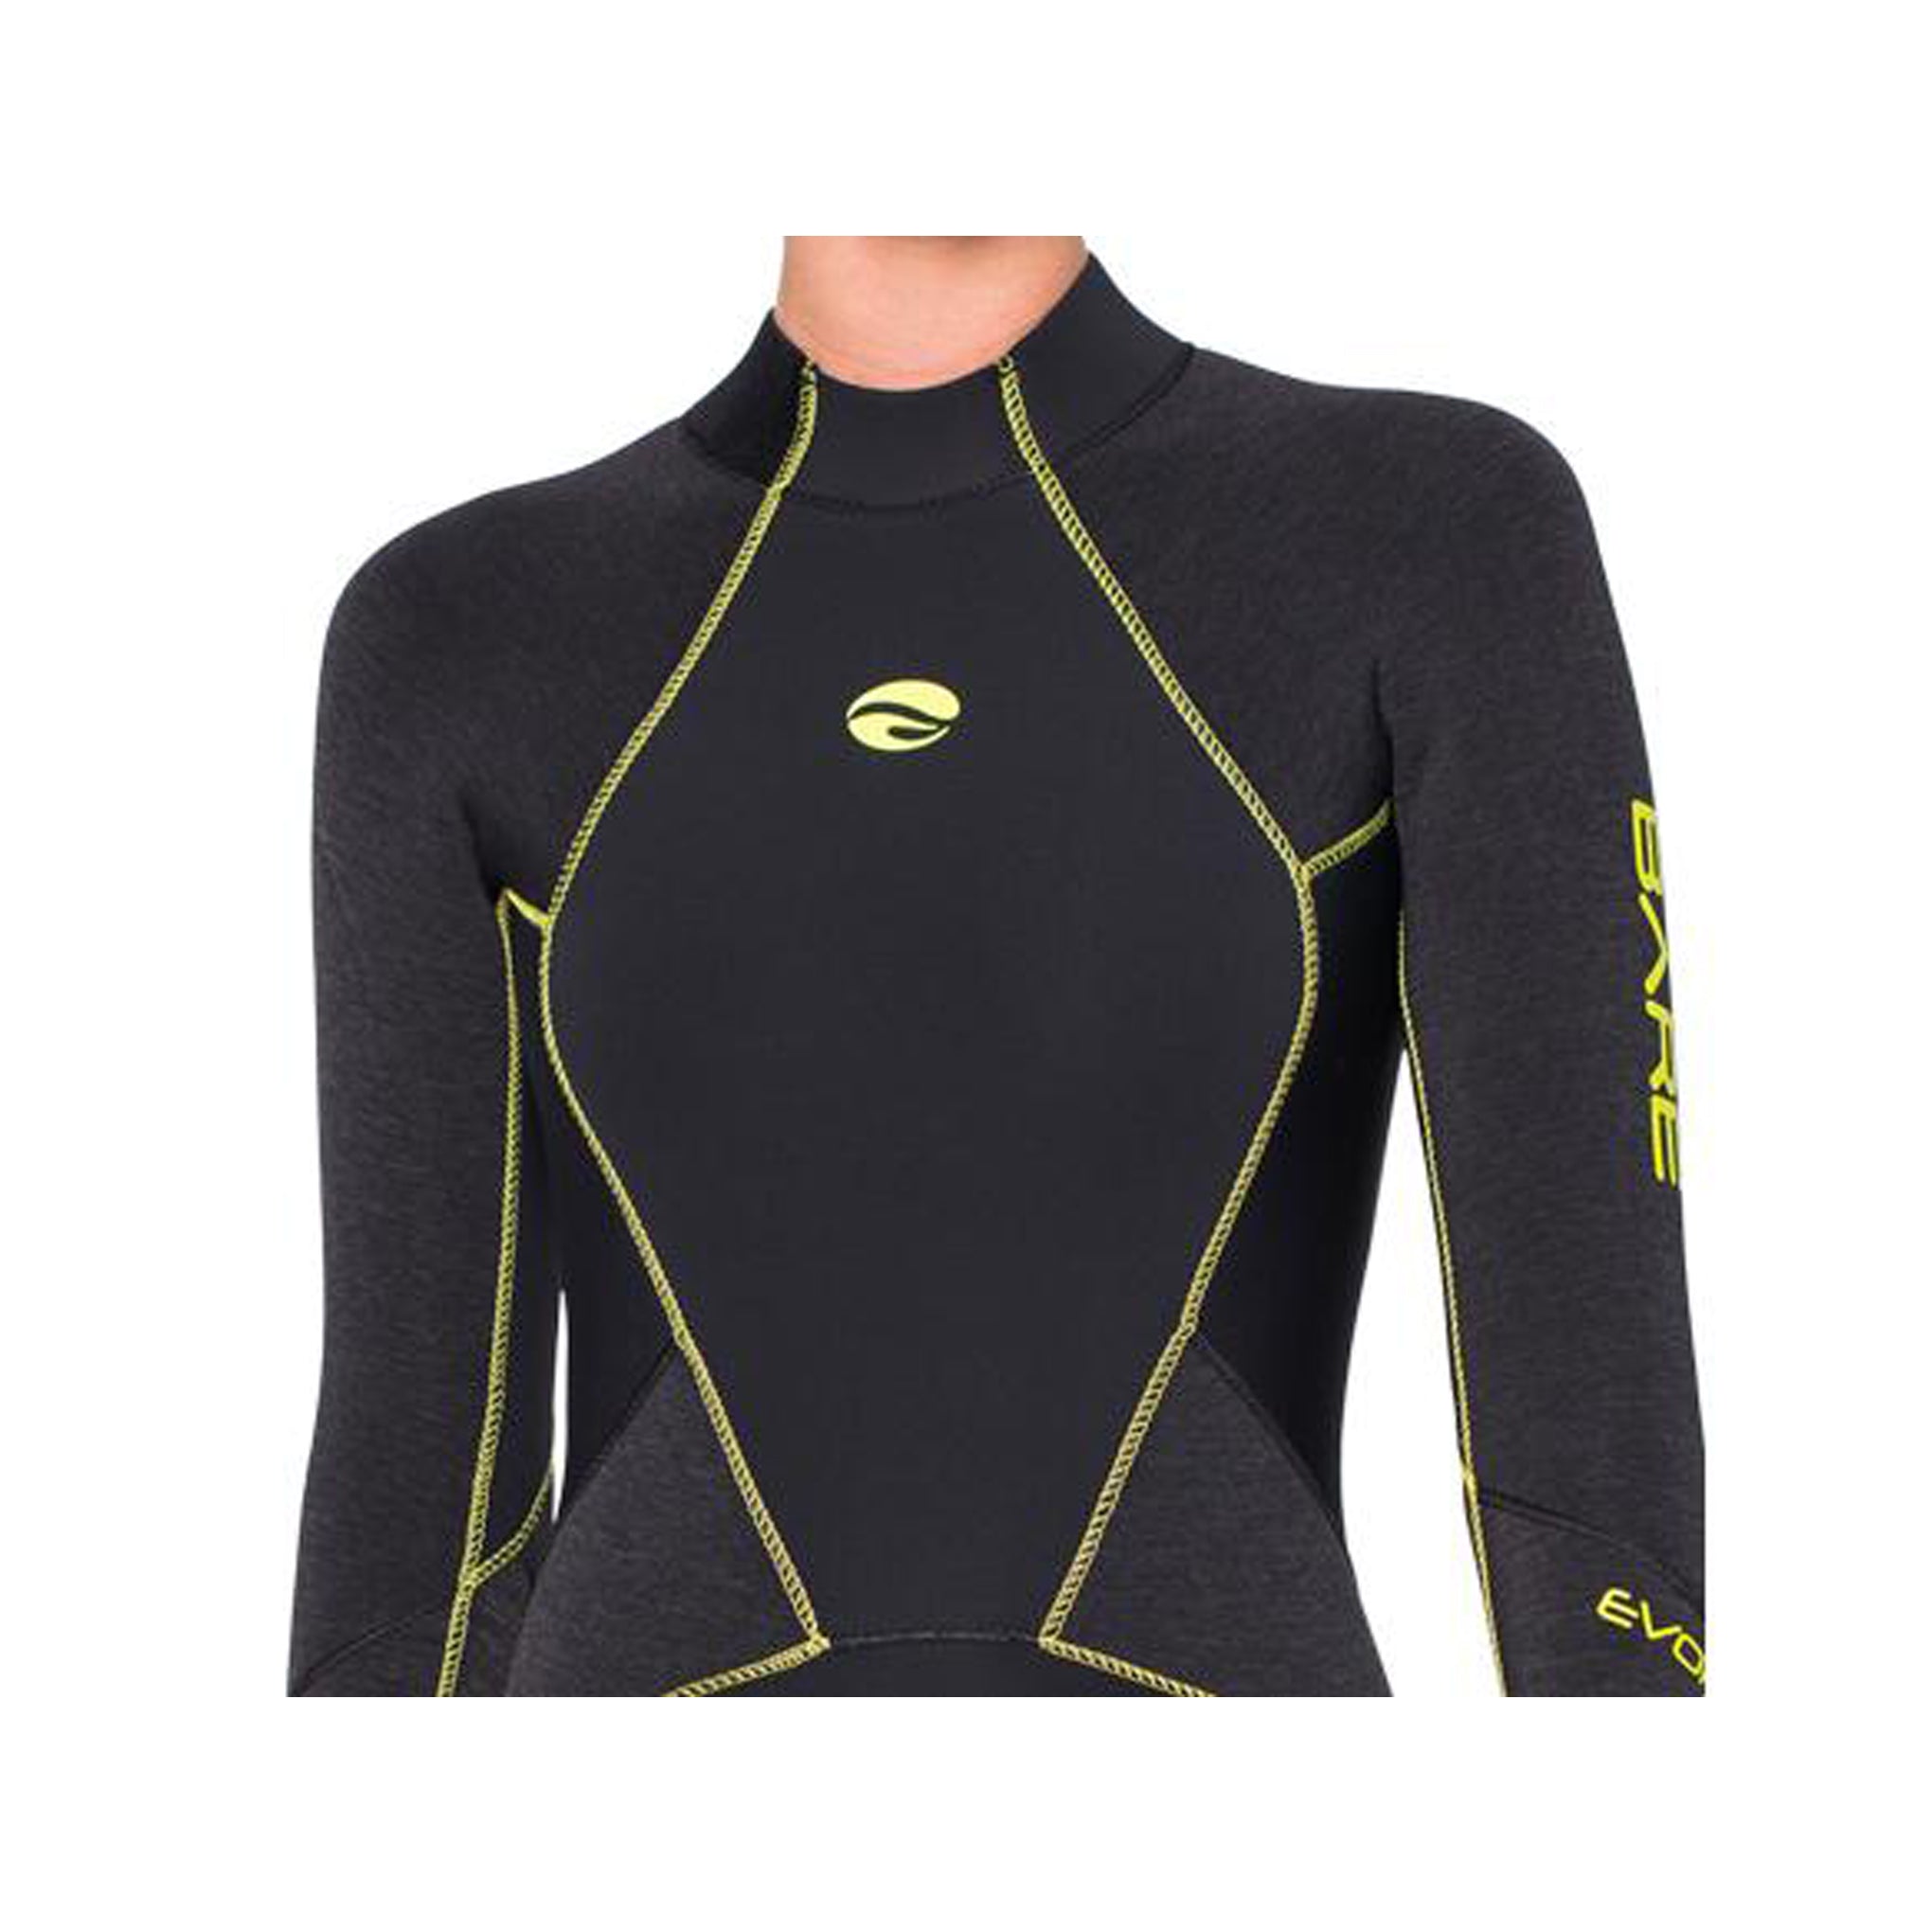 5mm Evoke Full - Women's-Wetsuits-Snorkeling, diver, sharkskin, scuba diving hk, warm protection, sharkskin, dive wear, bare wetsuit, aeroskin wetsuit, 浮潛